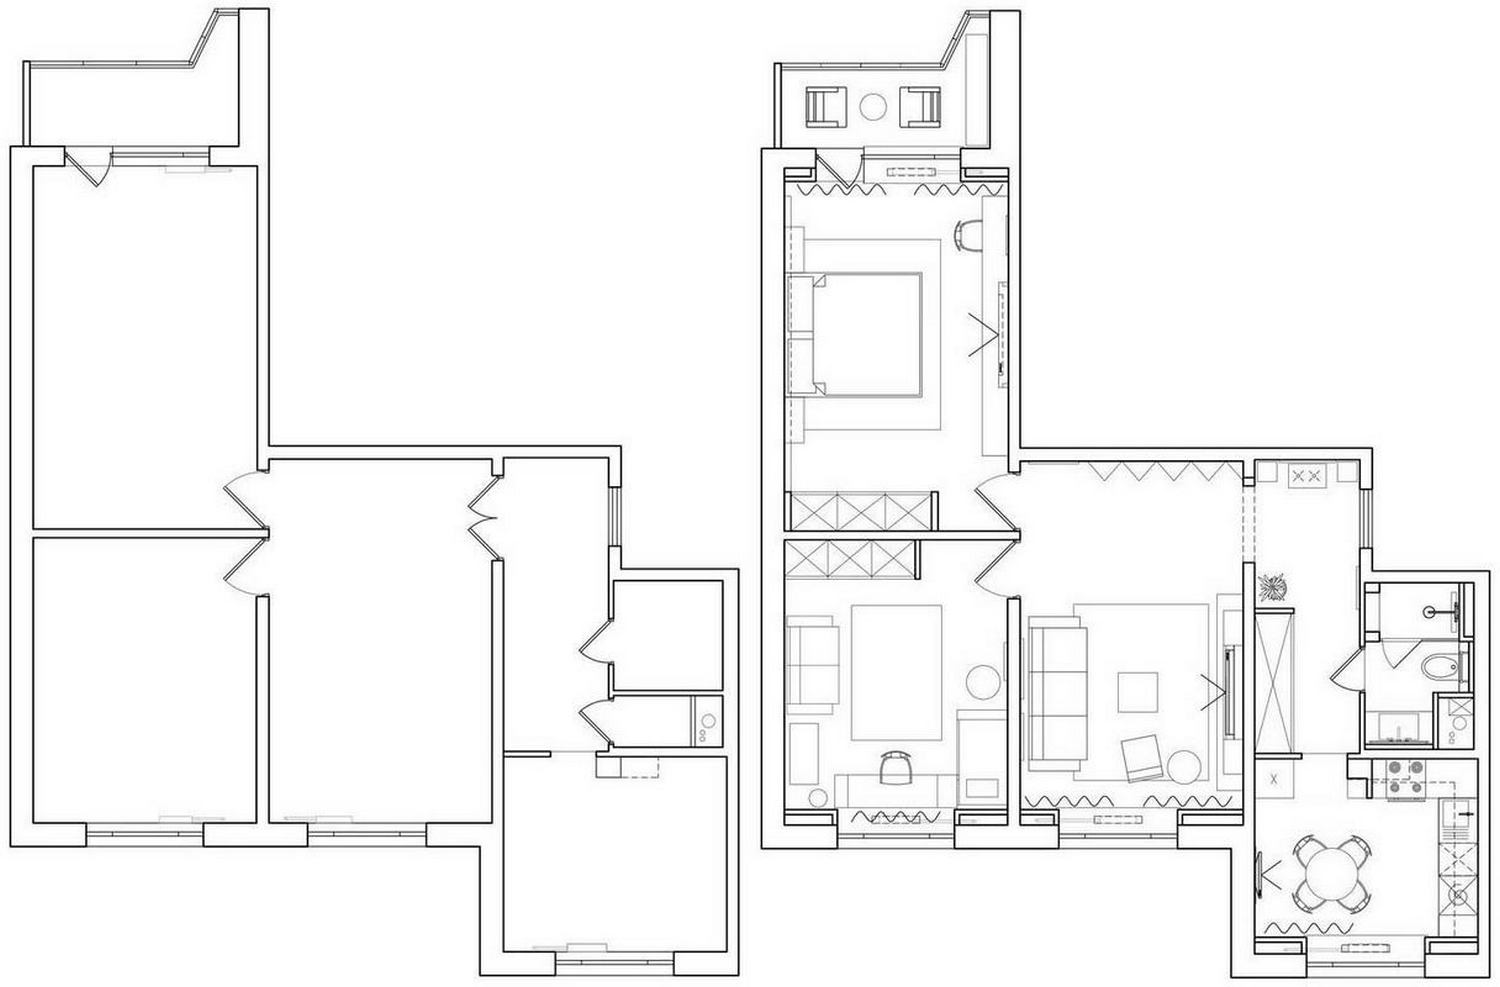 Remek gyerekszoba, modern megoldások, régi lakberendezés frissítése egy 78m2-es, háromszobás lakásban